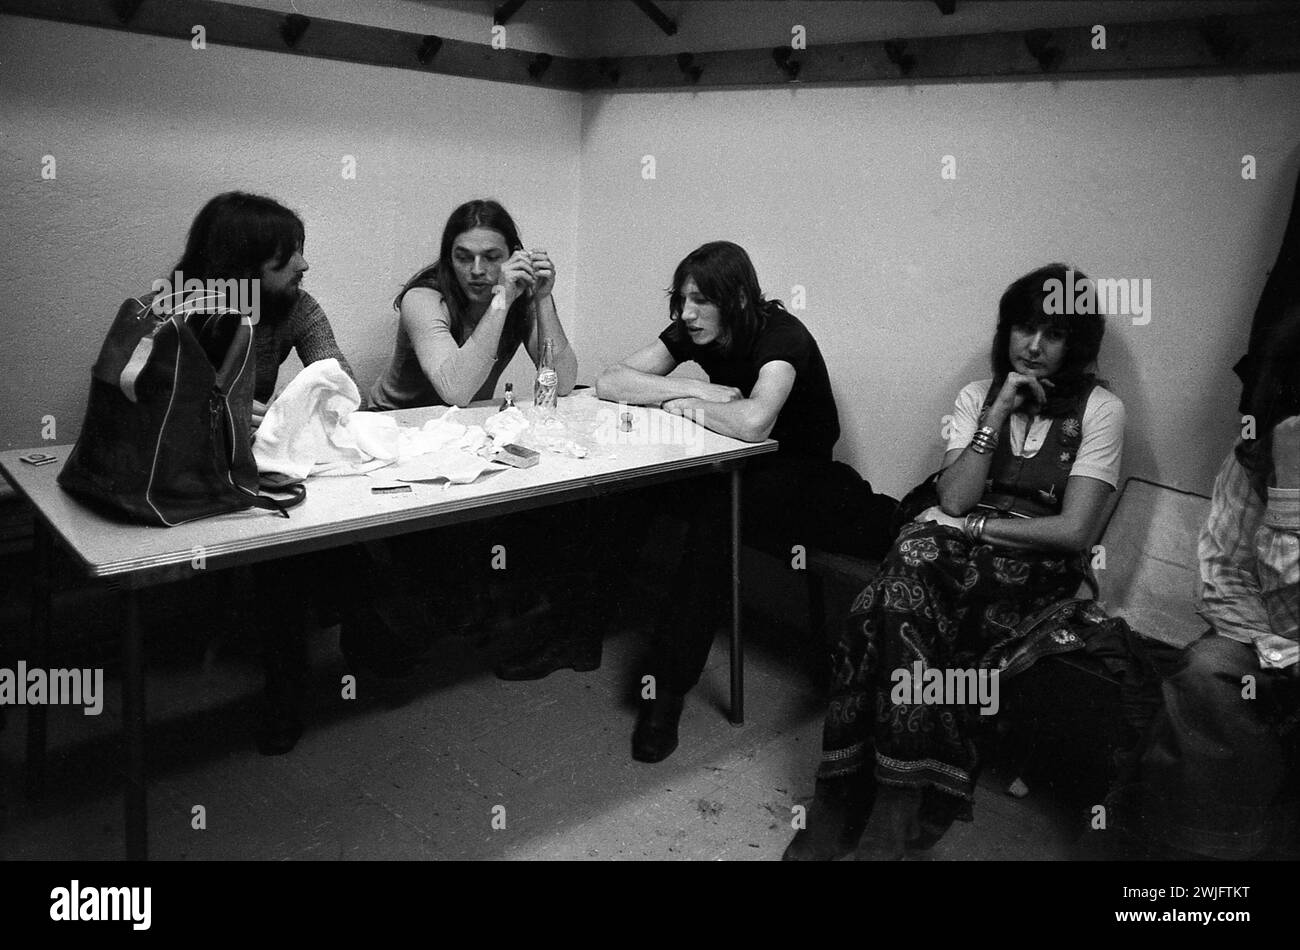 Philippe Gras / le Pictorium - Pink Floyd - 15/12/2016 - Francia / Auvergne-Rhone-Alpes / Lione - Pink Floyd backstage prima del loro concerto a Lione, 12 giugno 1971 Foto Stock